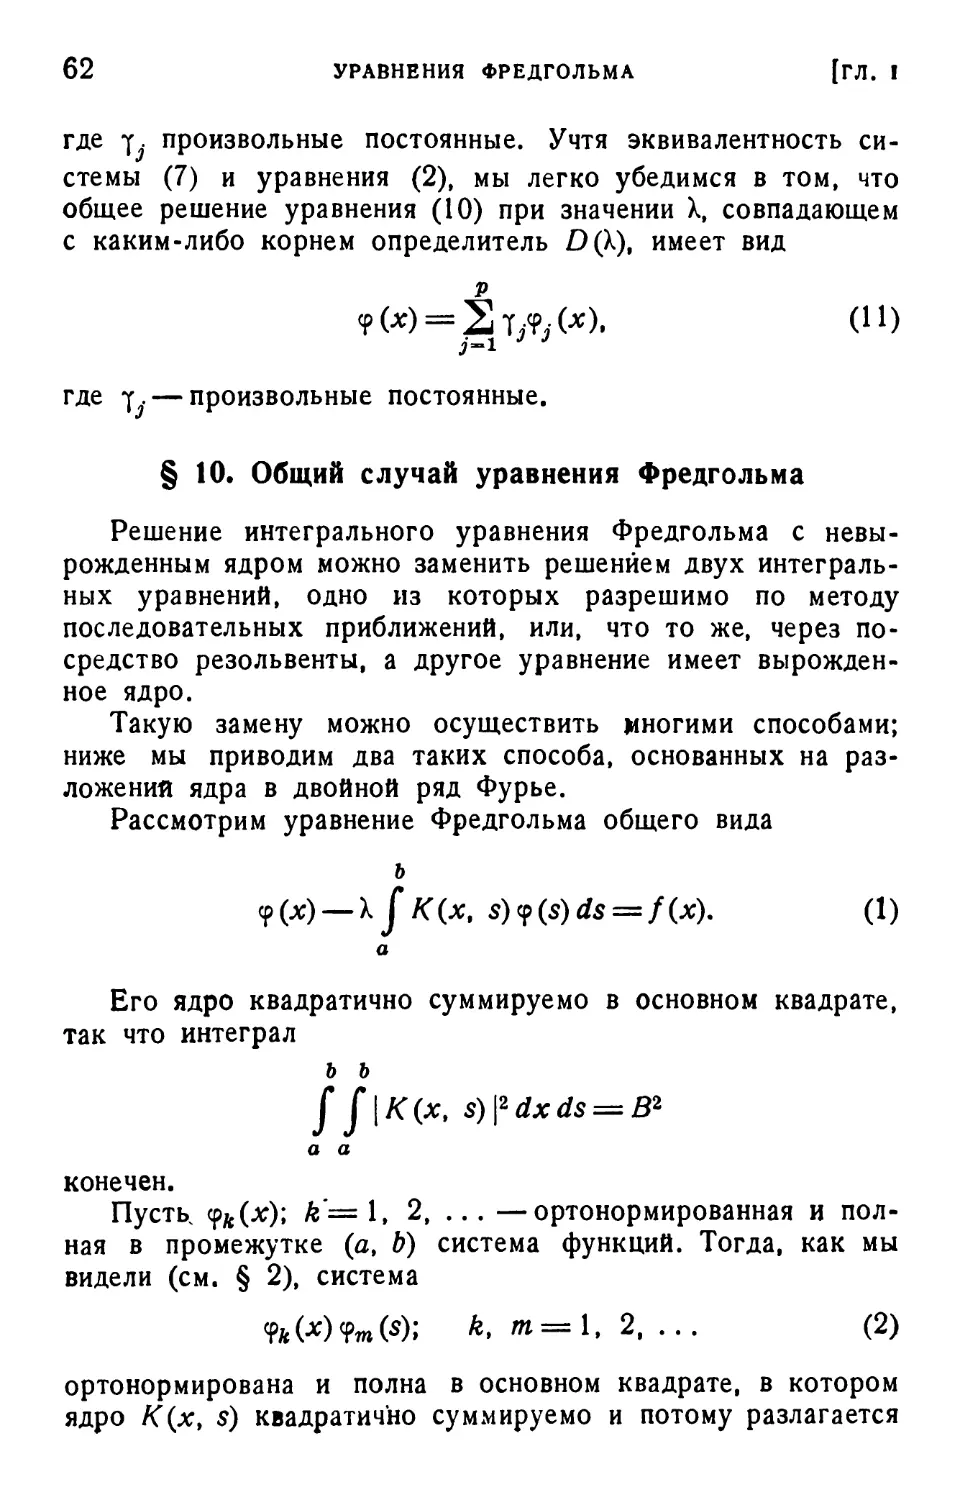 § 10. Общий случай уравнения Фредгольма